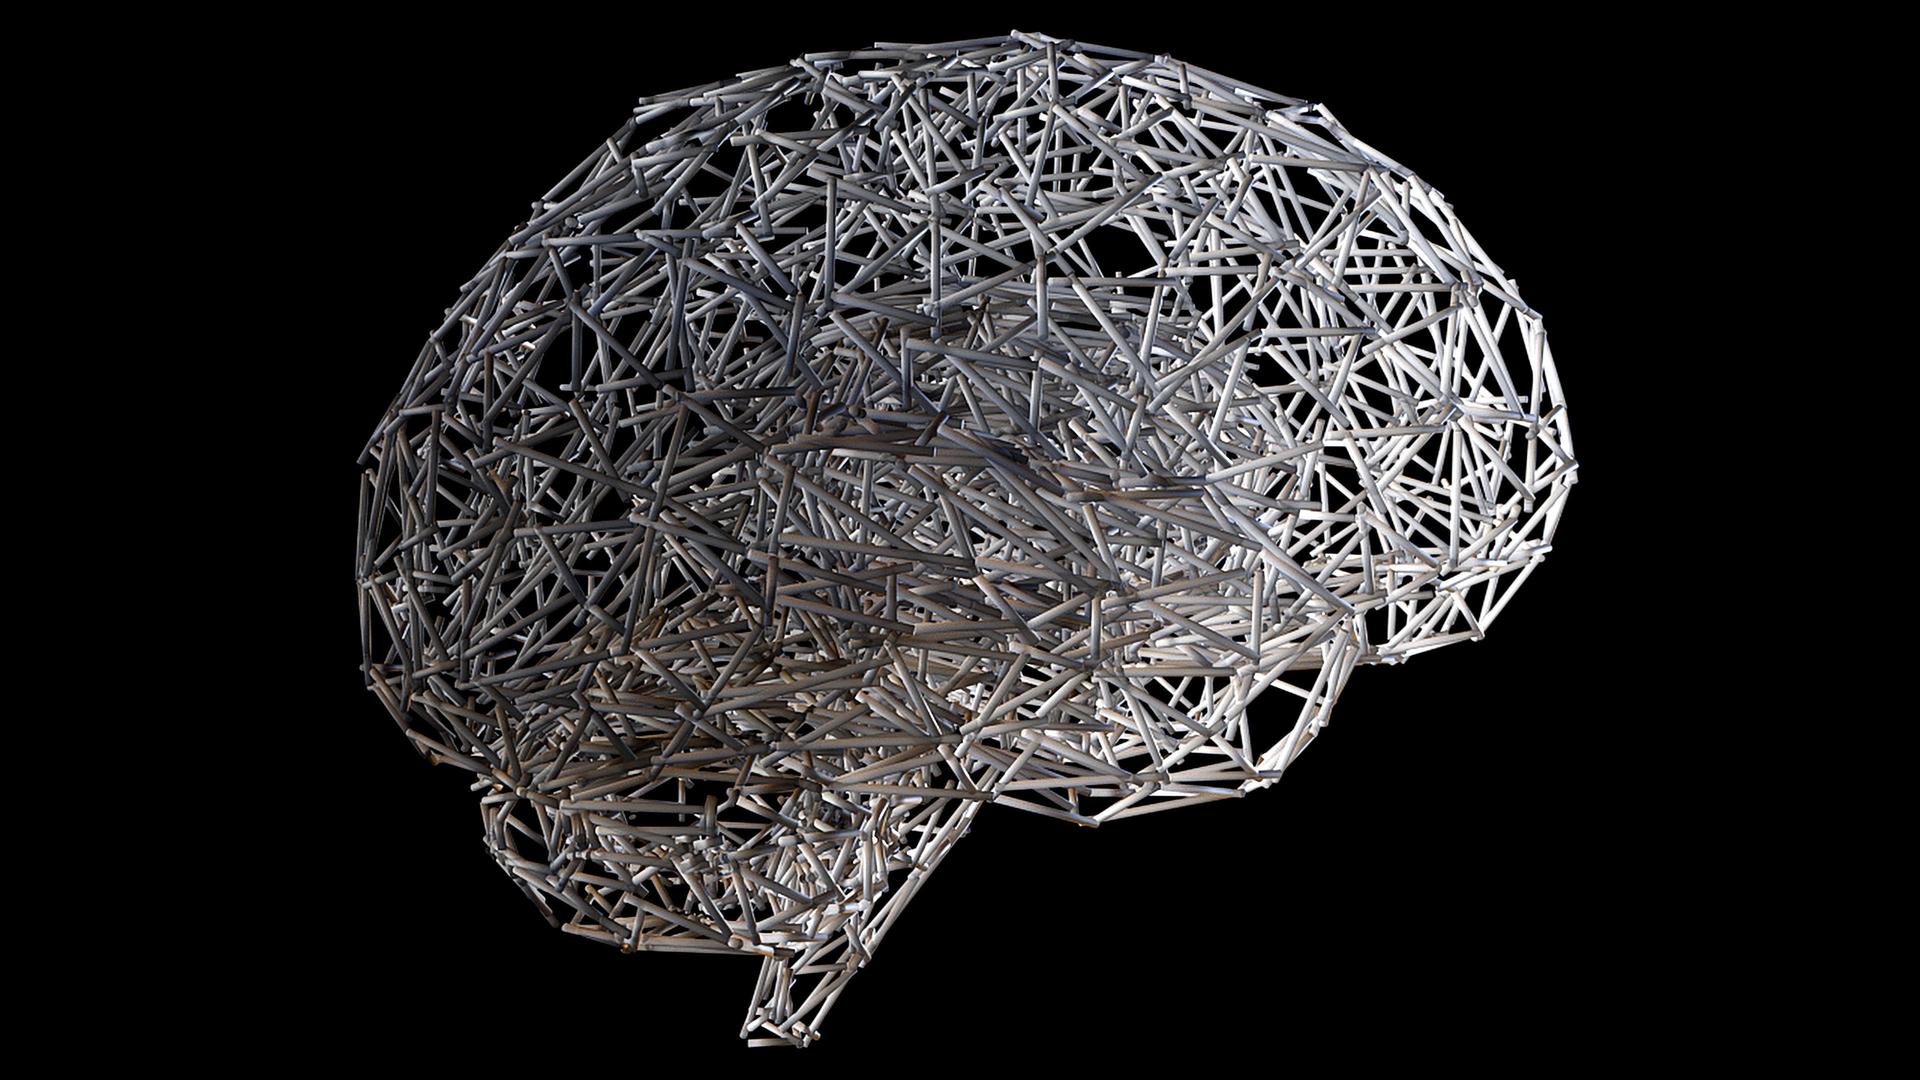 Künstliche 3-D-Aufnahme in der Form eines menschlichen Gehirns